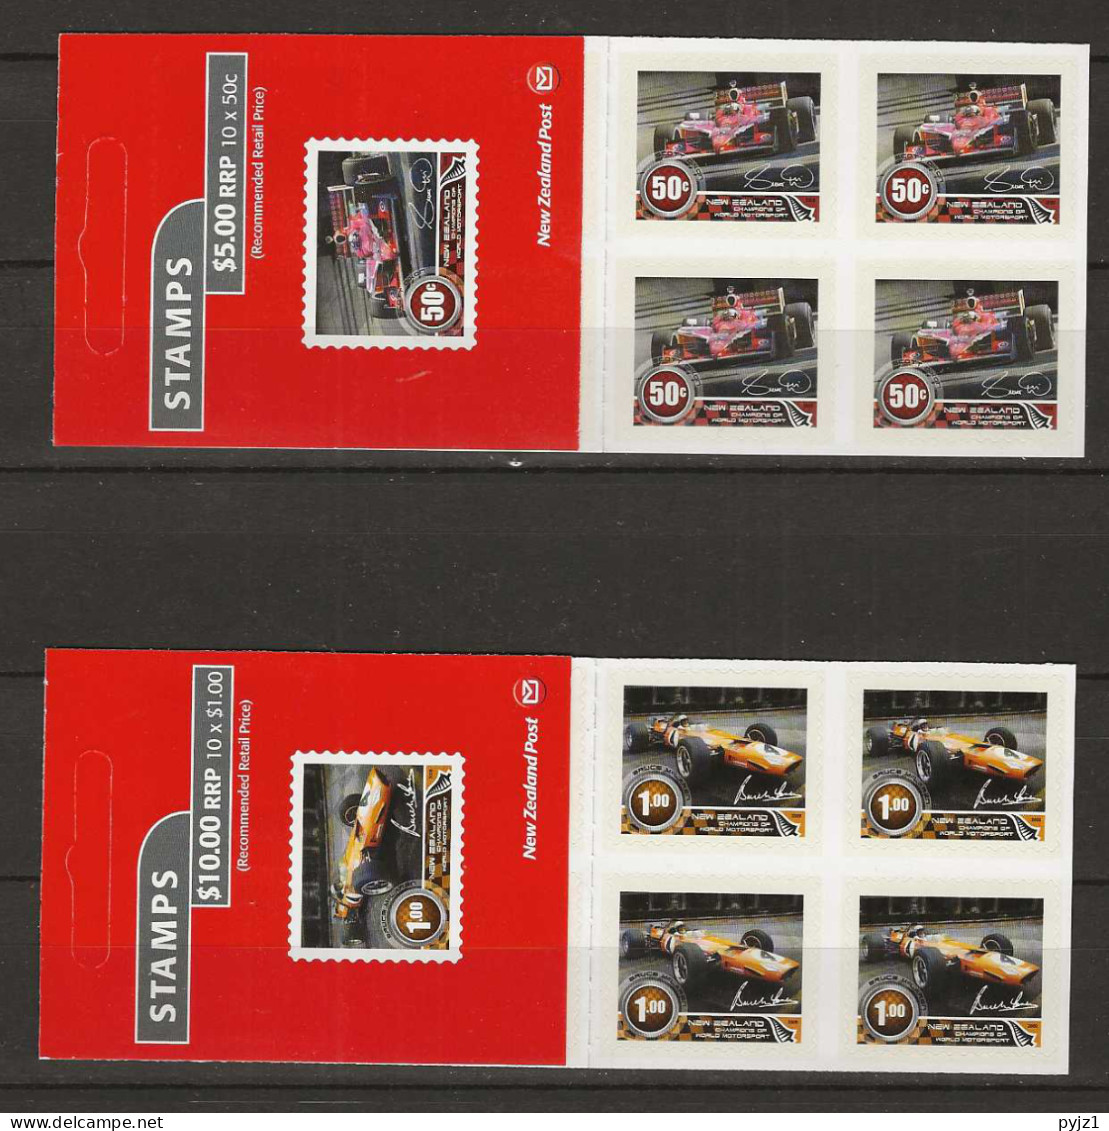 2009 MNH New Zealand Booklet Mi 2574-75 Postfris** - Postzegelboekjes